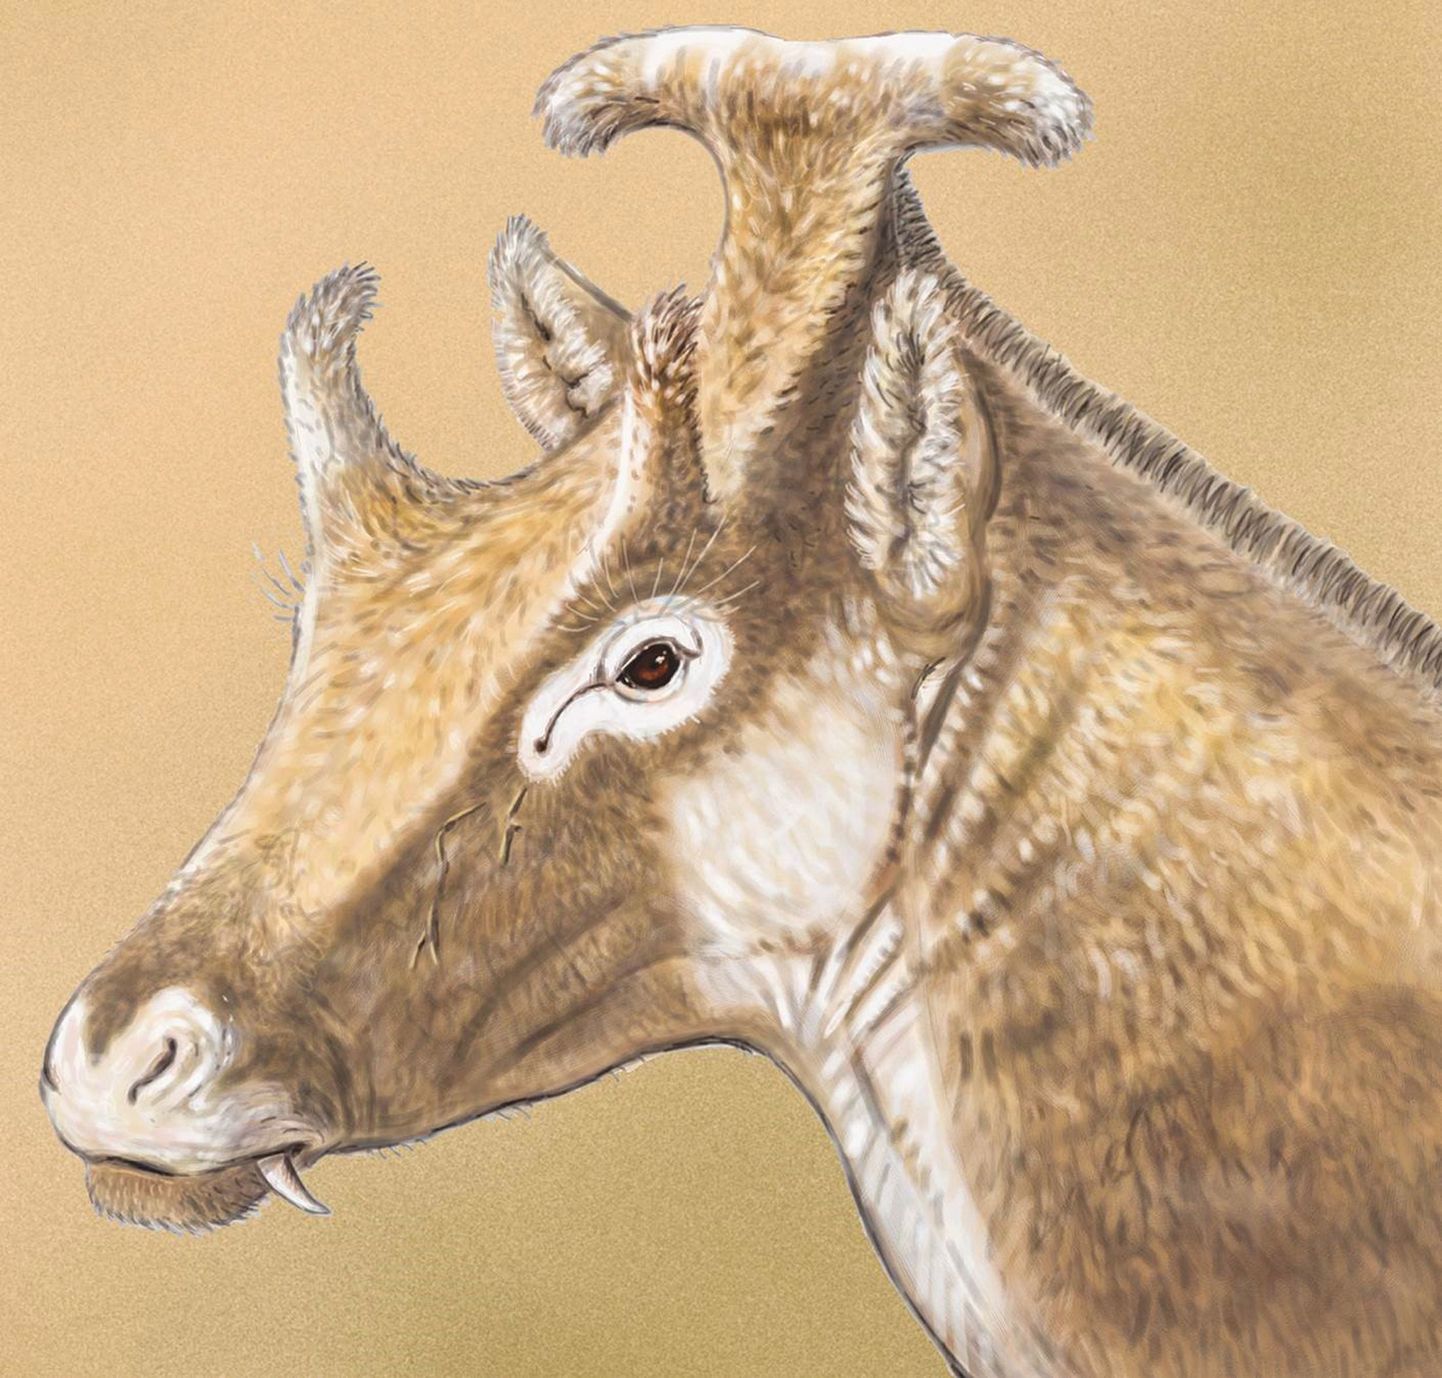 Keskmise hirve suurune Xenokeryx amidalae  elas Euroopas umbes 15 miljonit aastat tagasi